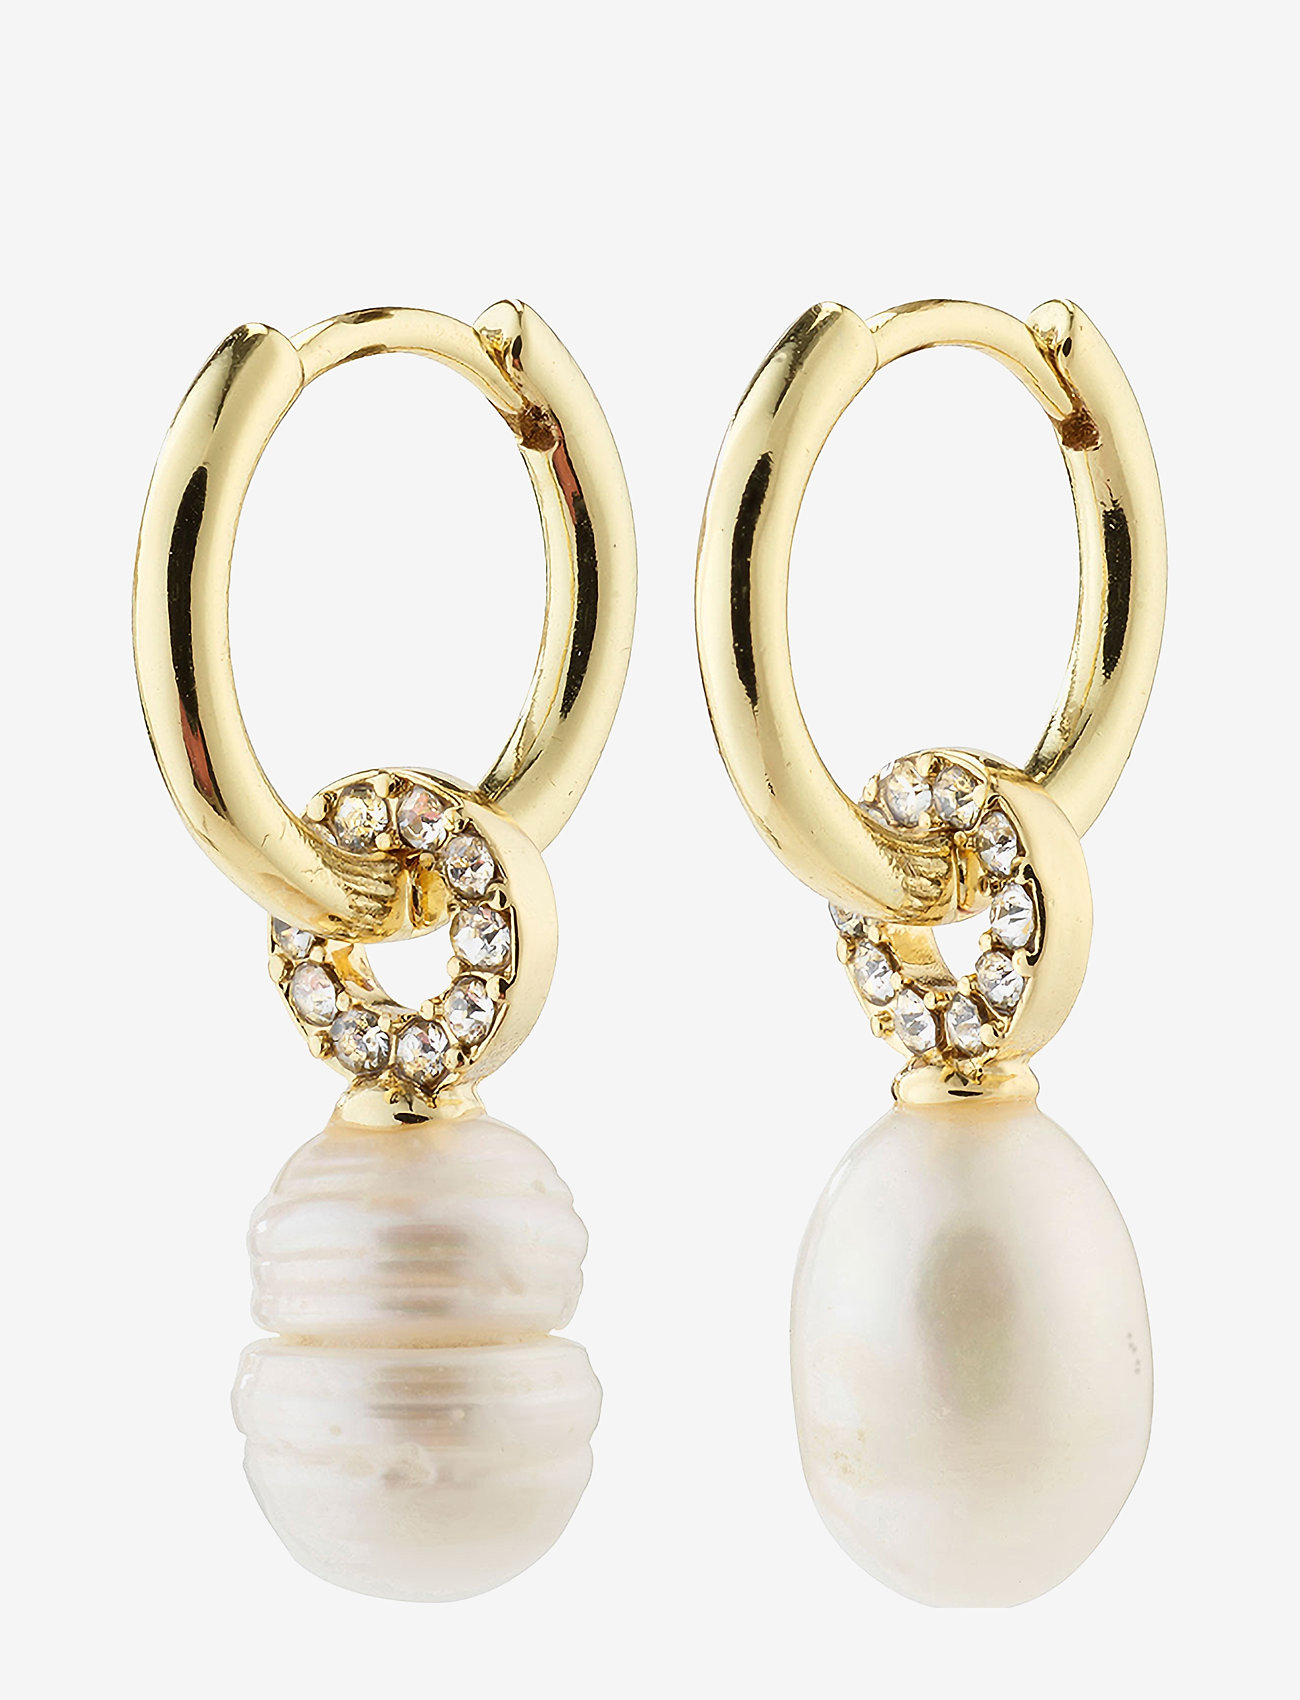 Pilgrim - BAKER freshwaterpearl earrings gold-plated - perleøreringe - gold plated - 0